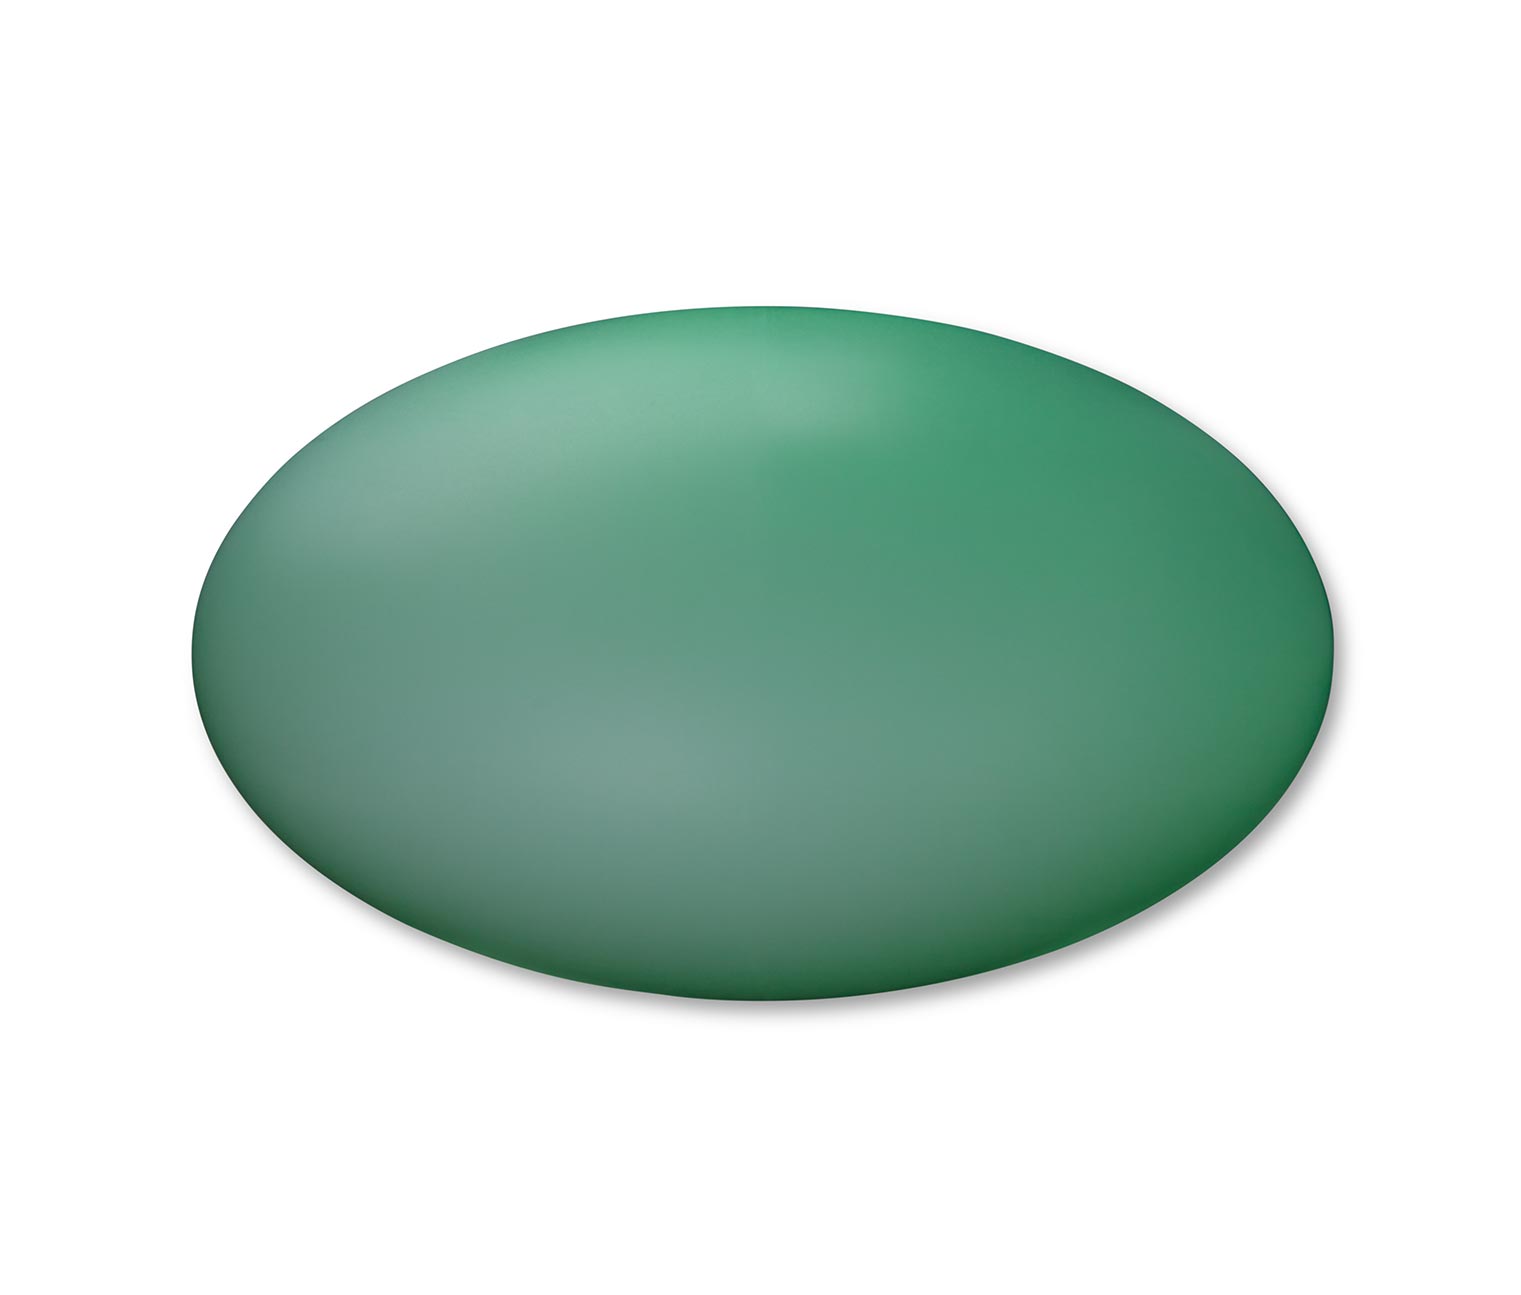 Solar-Outdoorleuchte, oval mit Farbwechsel online bestellen bei Tchibo  368303